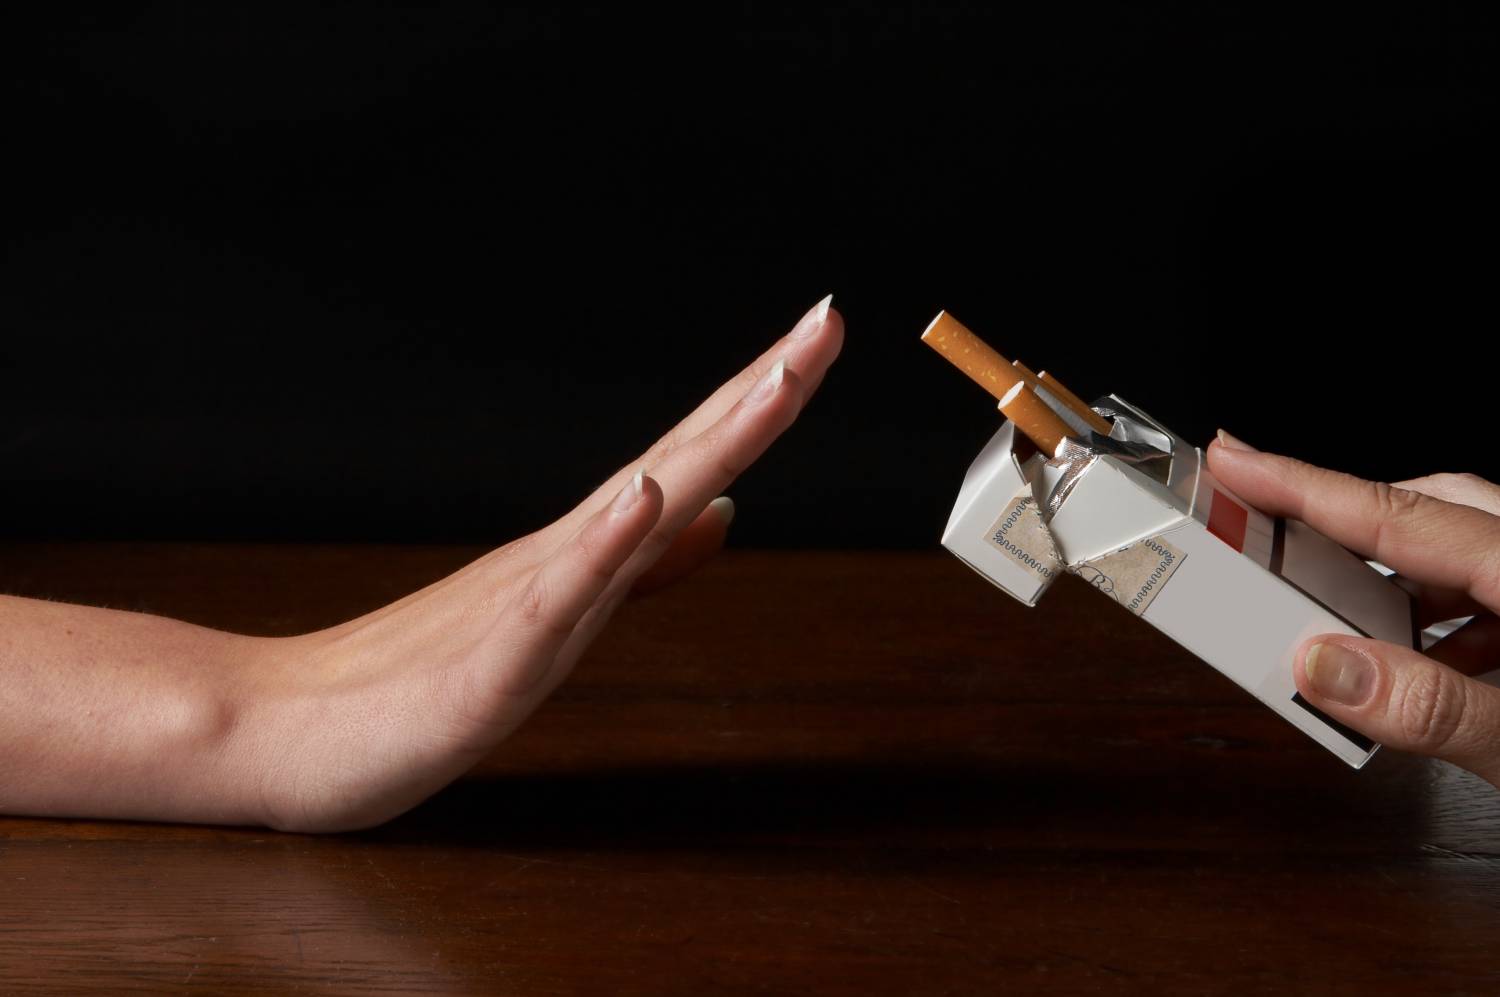 aki leszokott a dohányzásról ami megváltoztatta a fórumot tisztítsa meg a tüdejét és hagyja abba a dohányzást